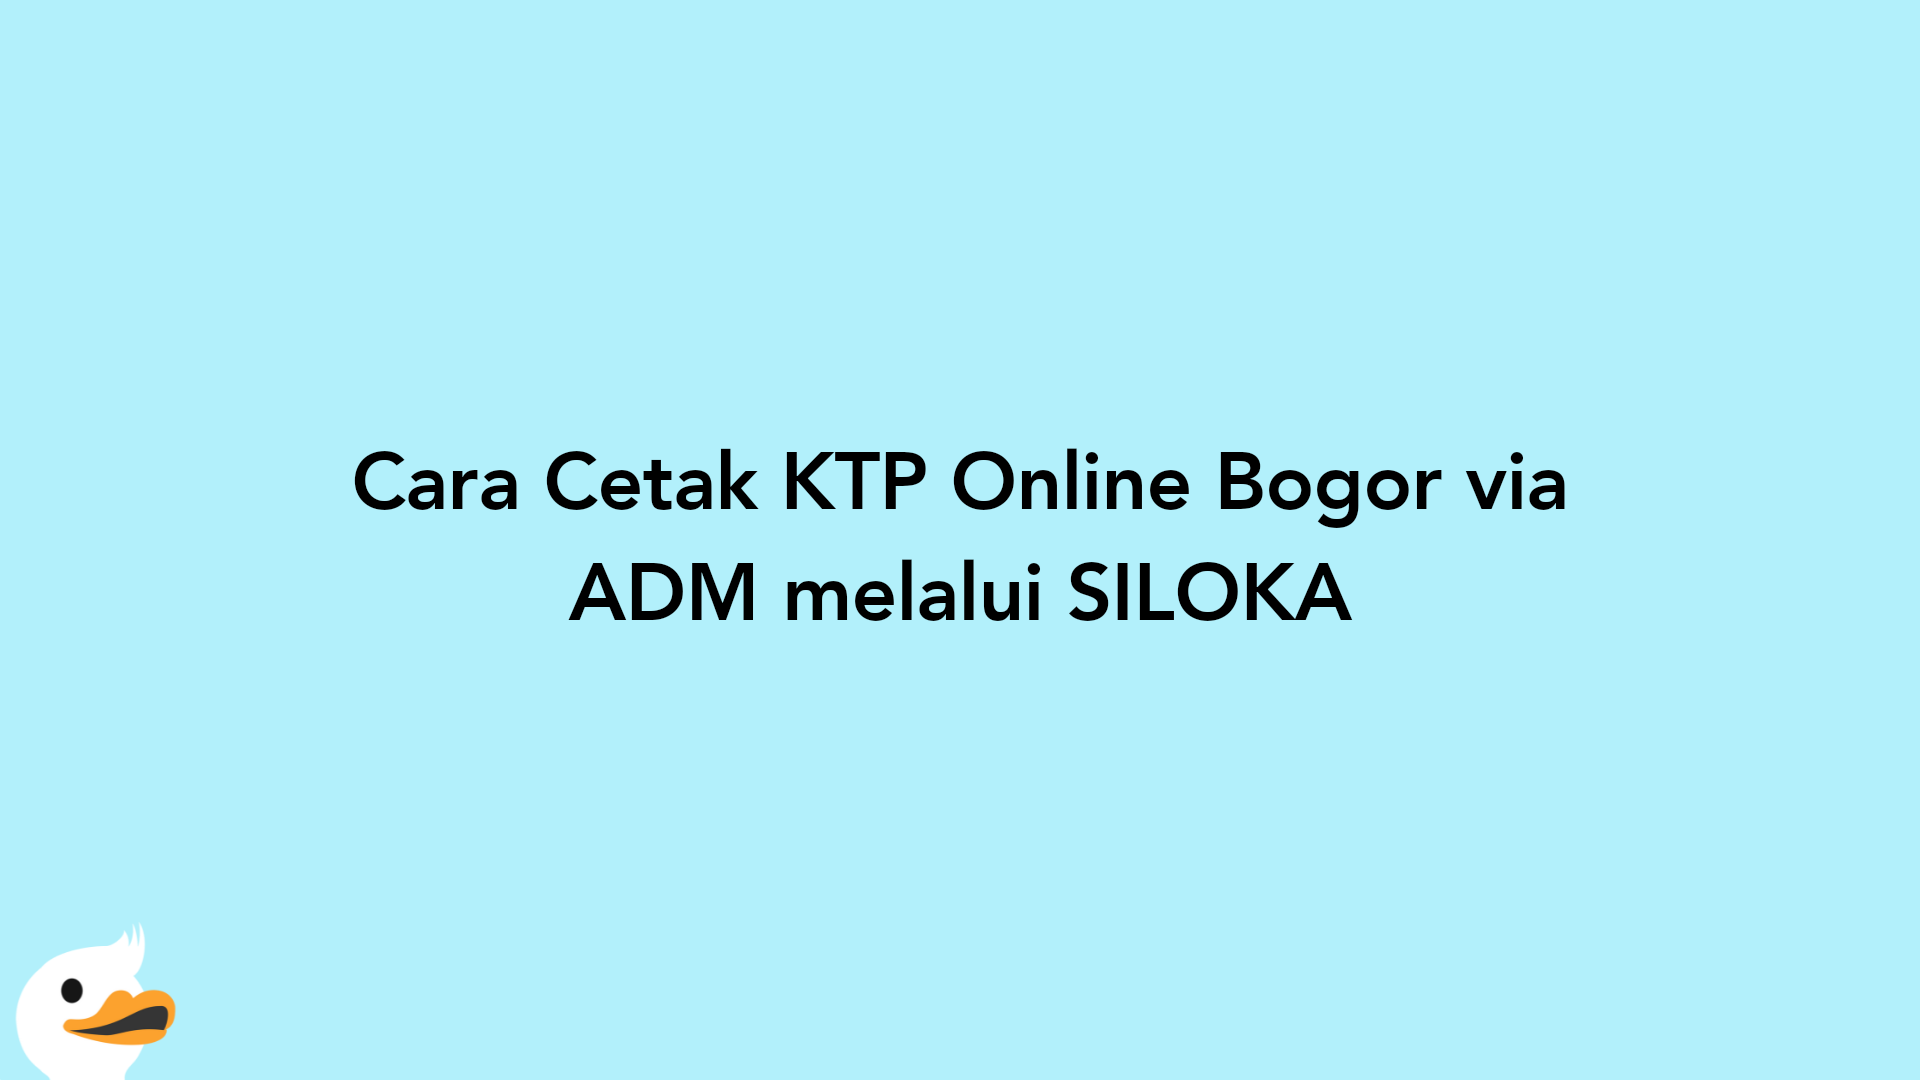 Cara Cetak KTP Online Bogor via ADM melalui SILOKA